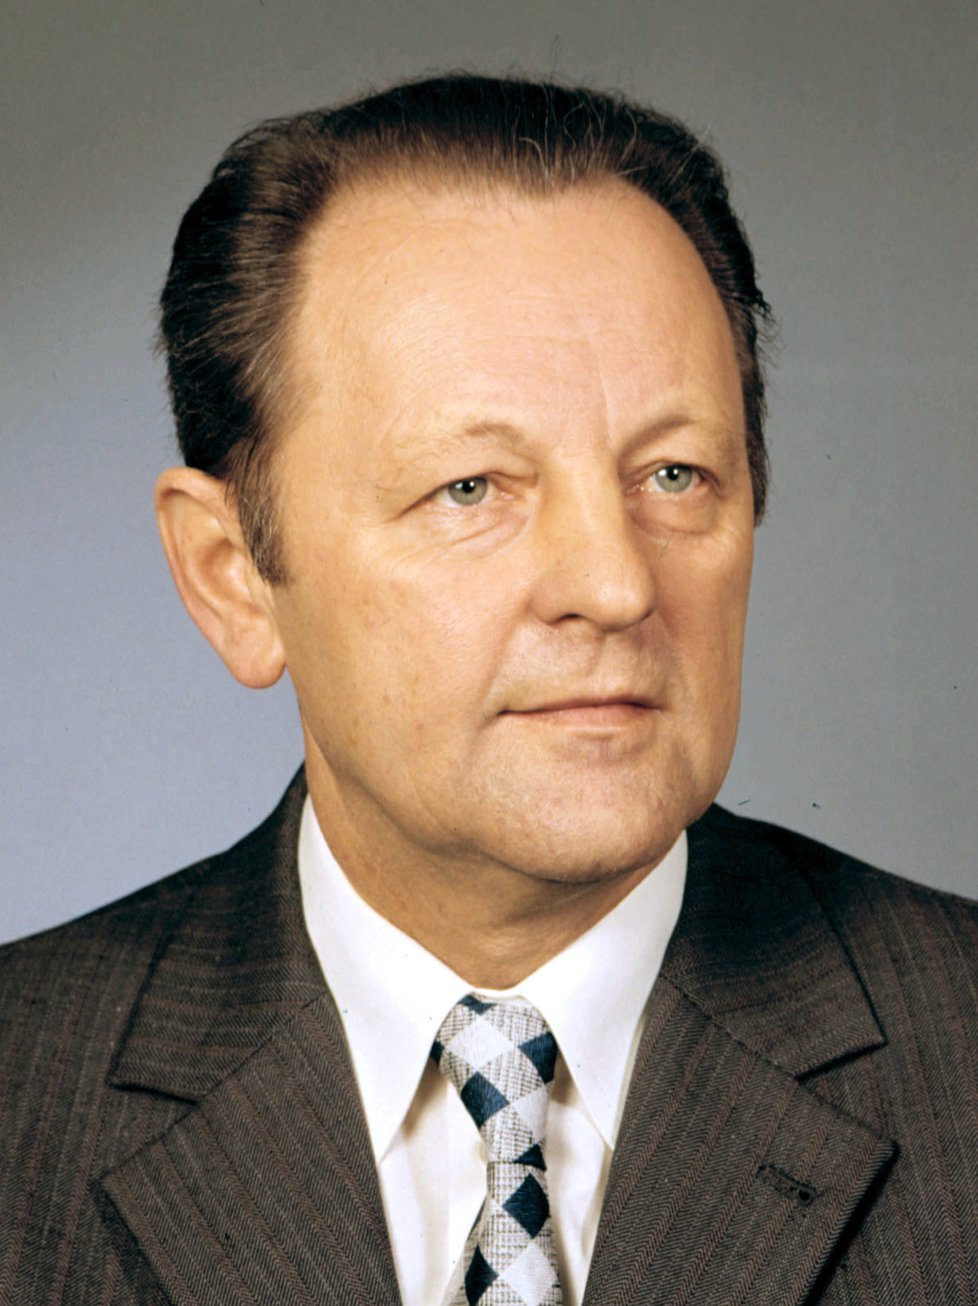 Miloš Jakeš považuje za svůj největší životní úspěch vybudování socialismu v Československu.